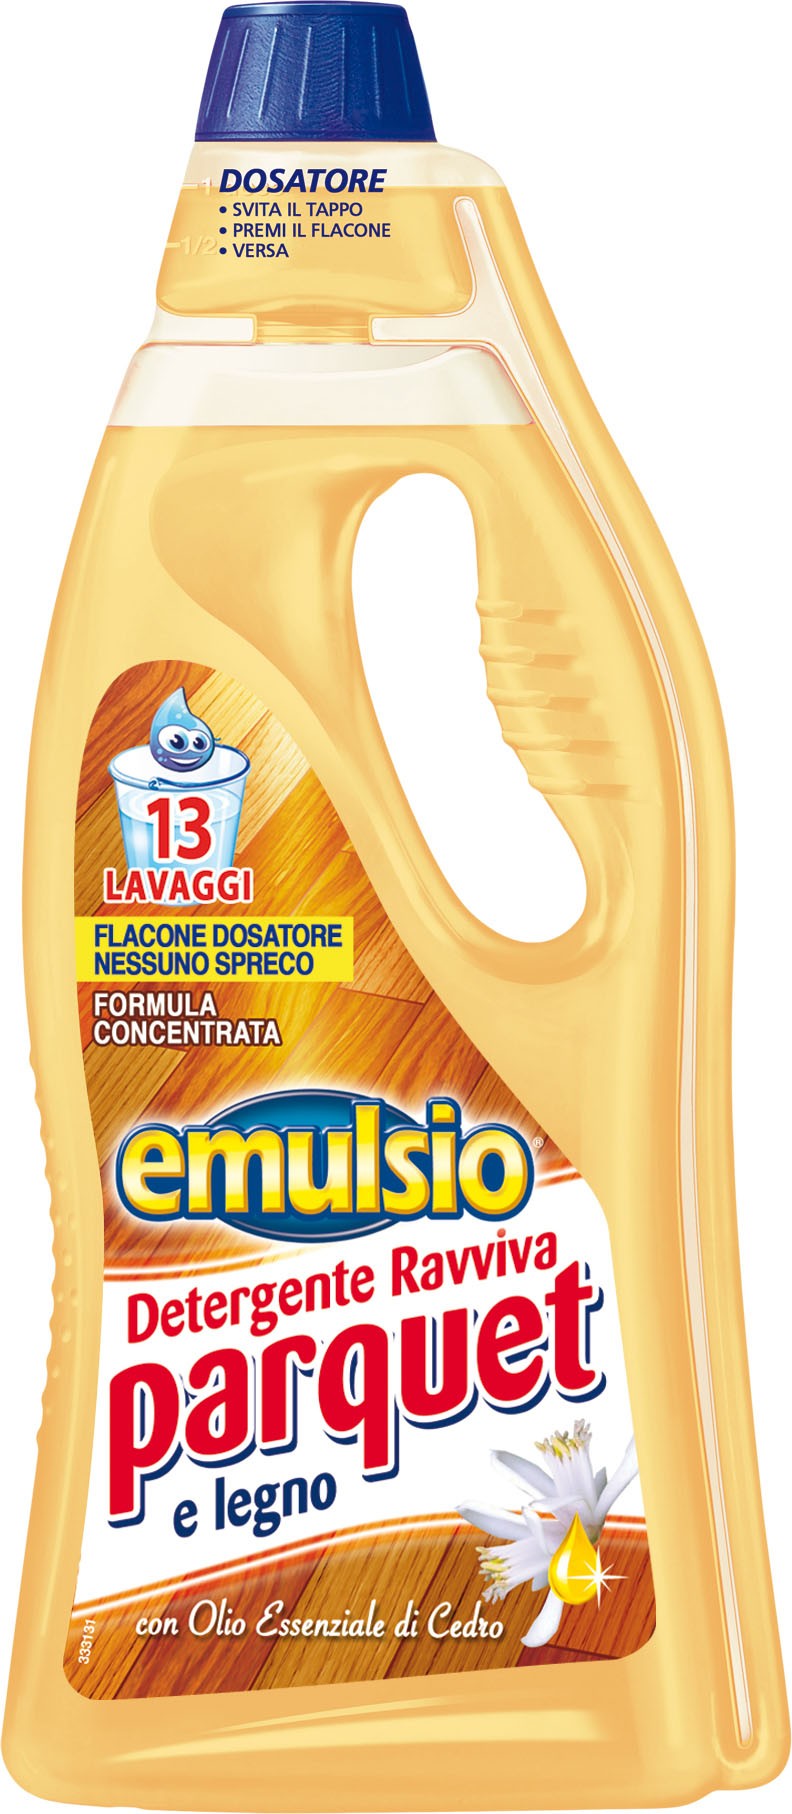 EMULSIO Ravviva Parquet Detergente con Olio essenziale di Argan 750ml